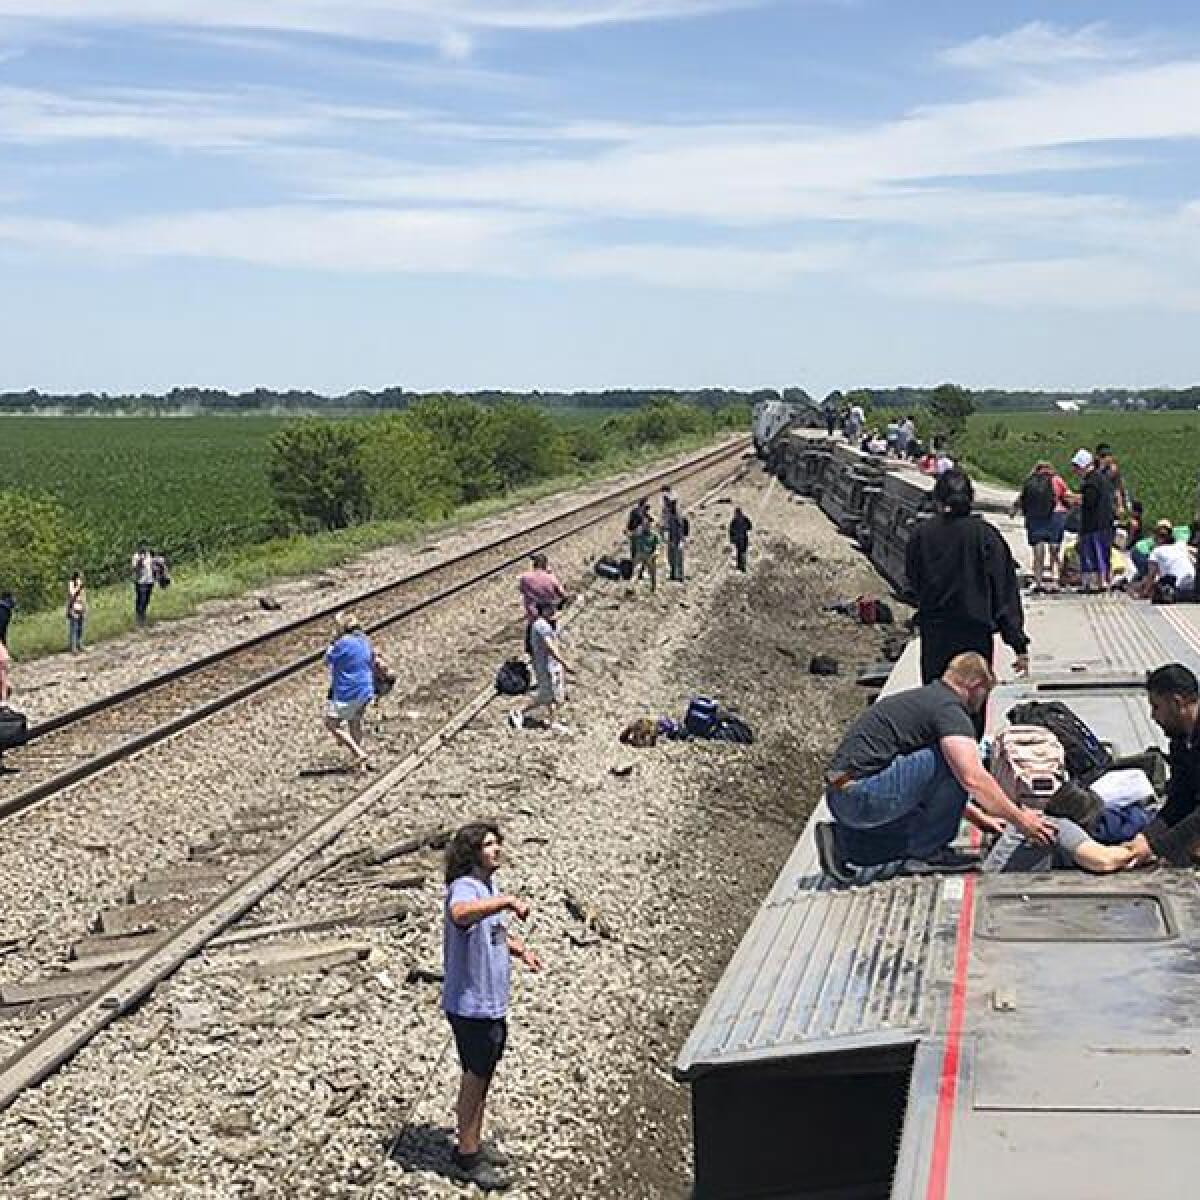 An Amtrak train train derailed near Mendon, Missouri